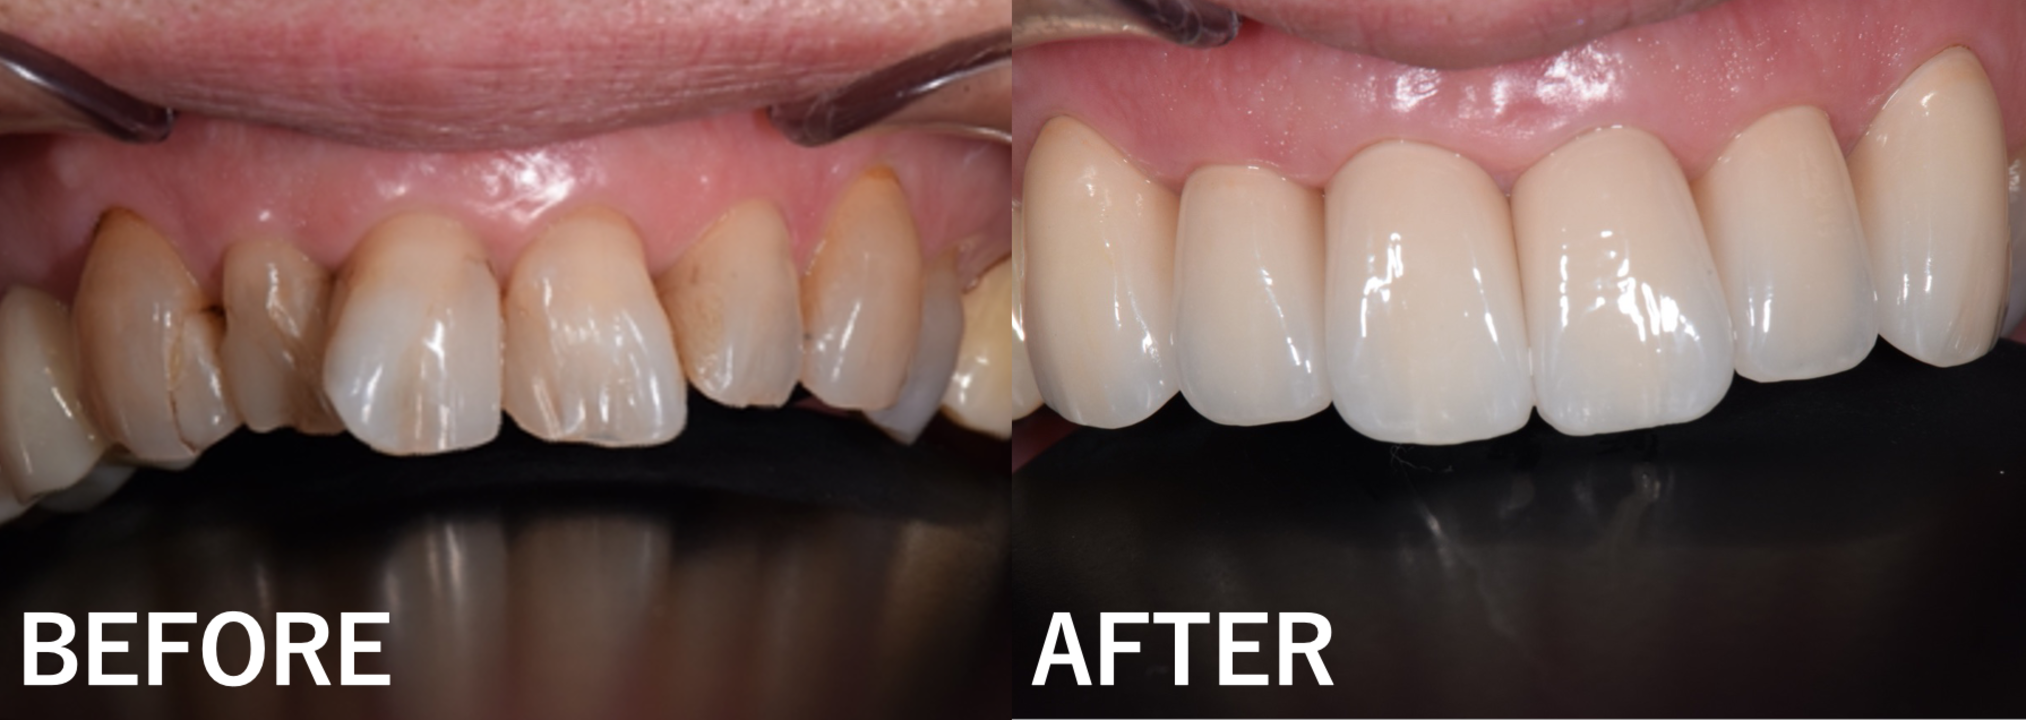 【症例】コンポジットレジンで修復を繰り返していた前歯をジルコニアセラミック治療で歯並びまで改善